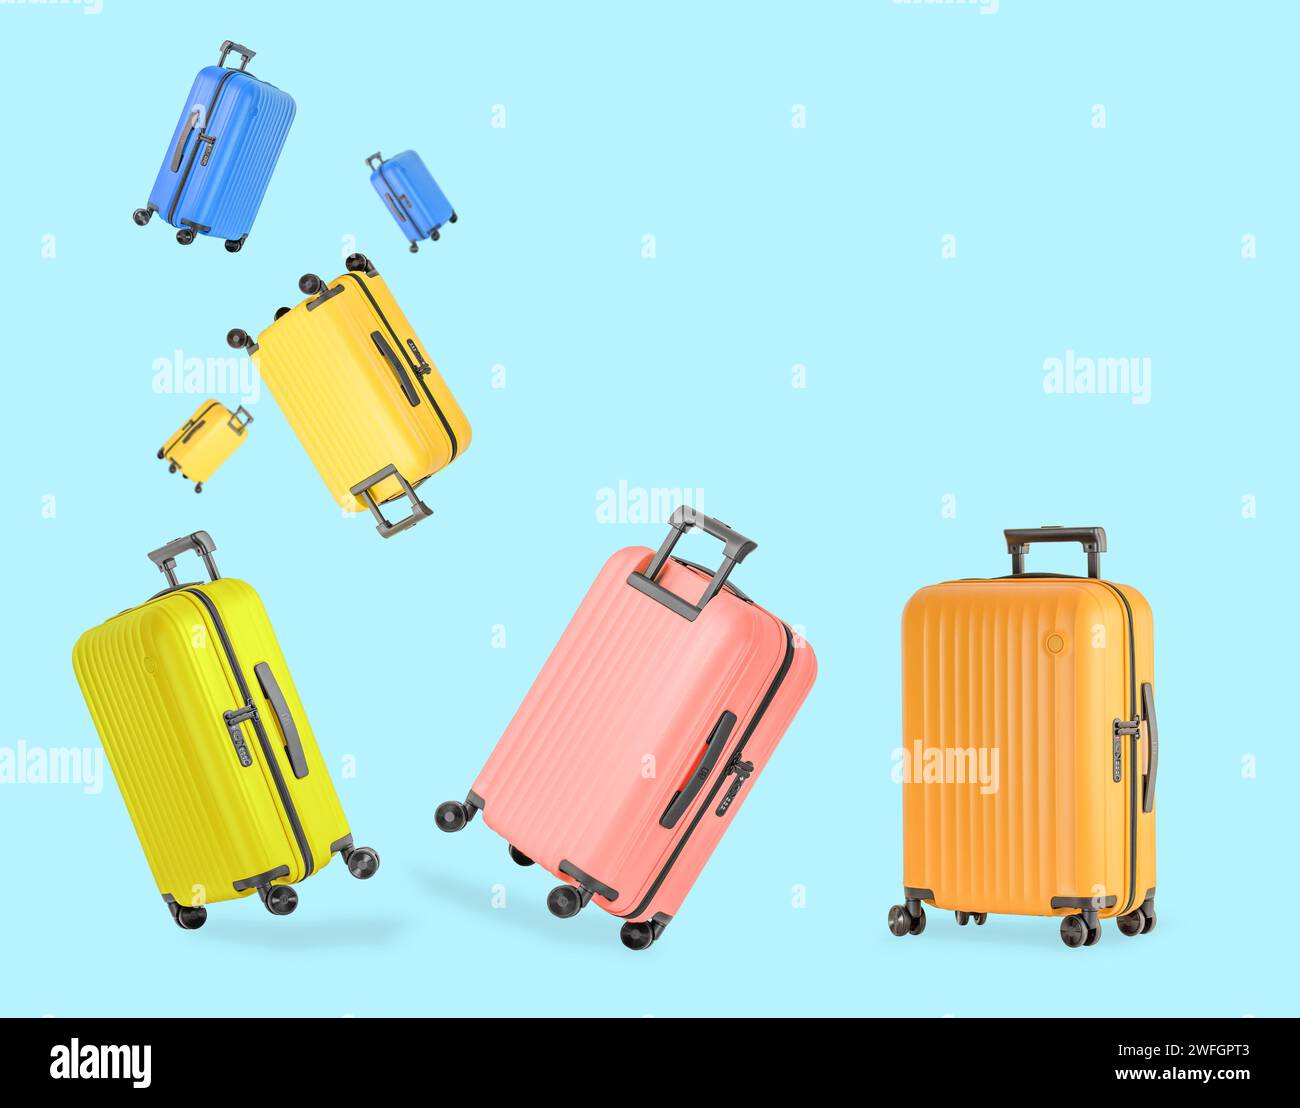 Valises en plastique élégantes colorées pour voyager avec roues et poignée rétractable. Concept de voyage Banque D'Images